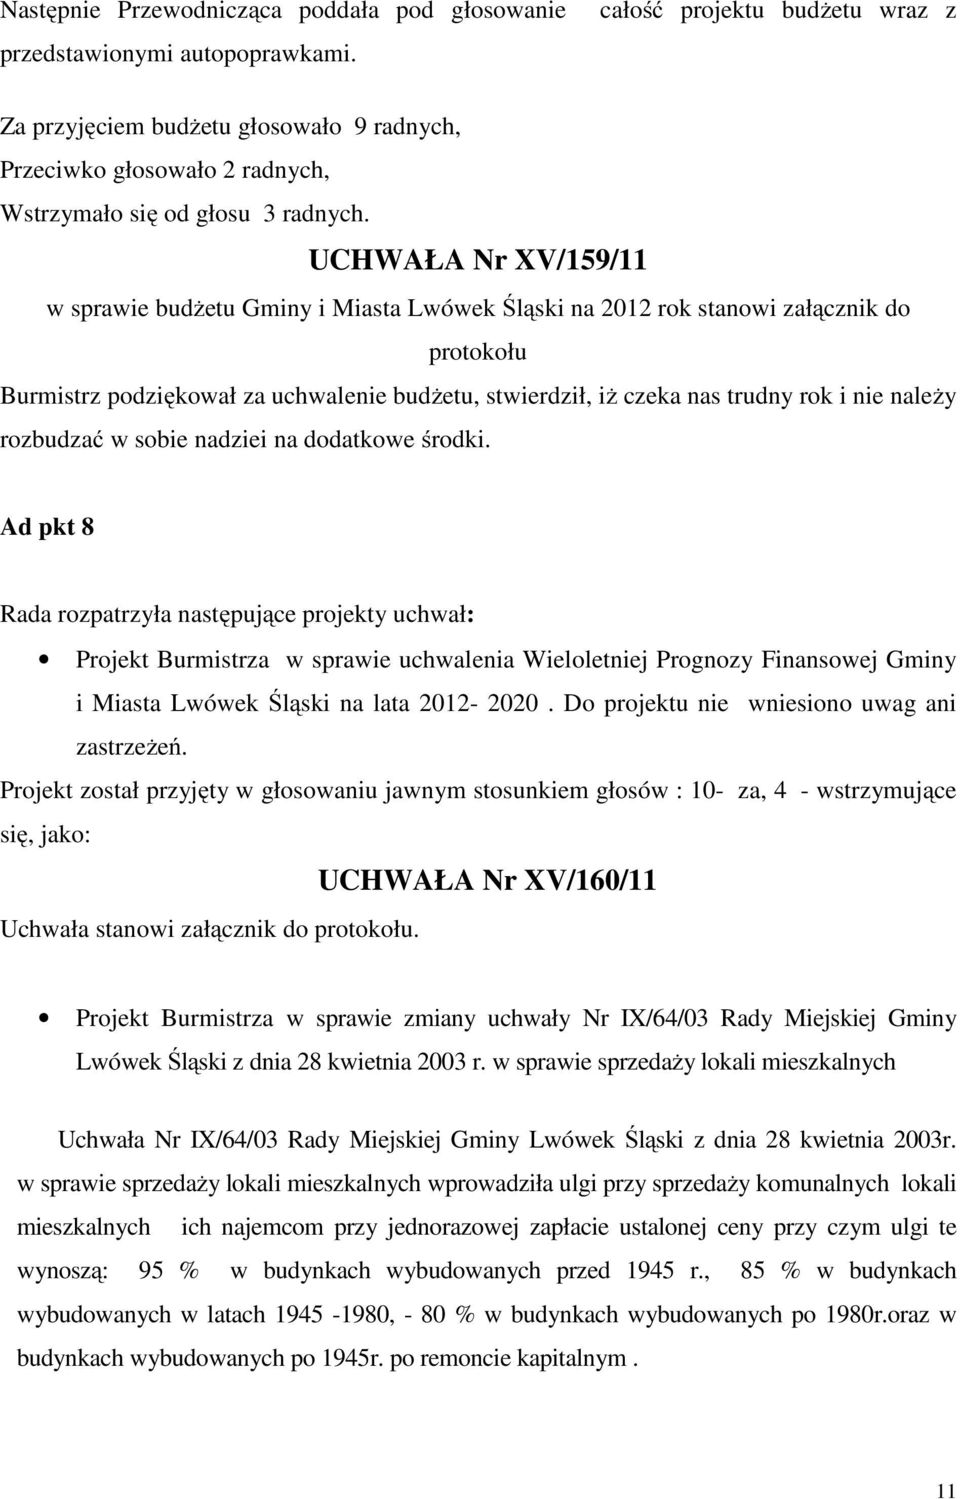 UCHWAŁA Nr XV/159/11 w sprawie budżetu Gminy i Miasta Lwówek Śląski na 2012 rok stanowi załącznik do protokołu Burmistrz podziękował za uchwalenie budżetu, stwierdził, iż czeka nas trudny rok i nie